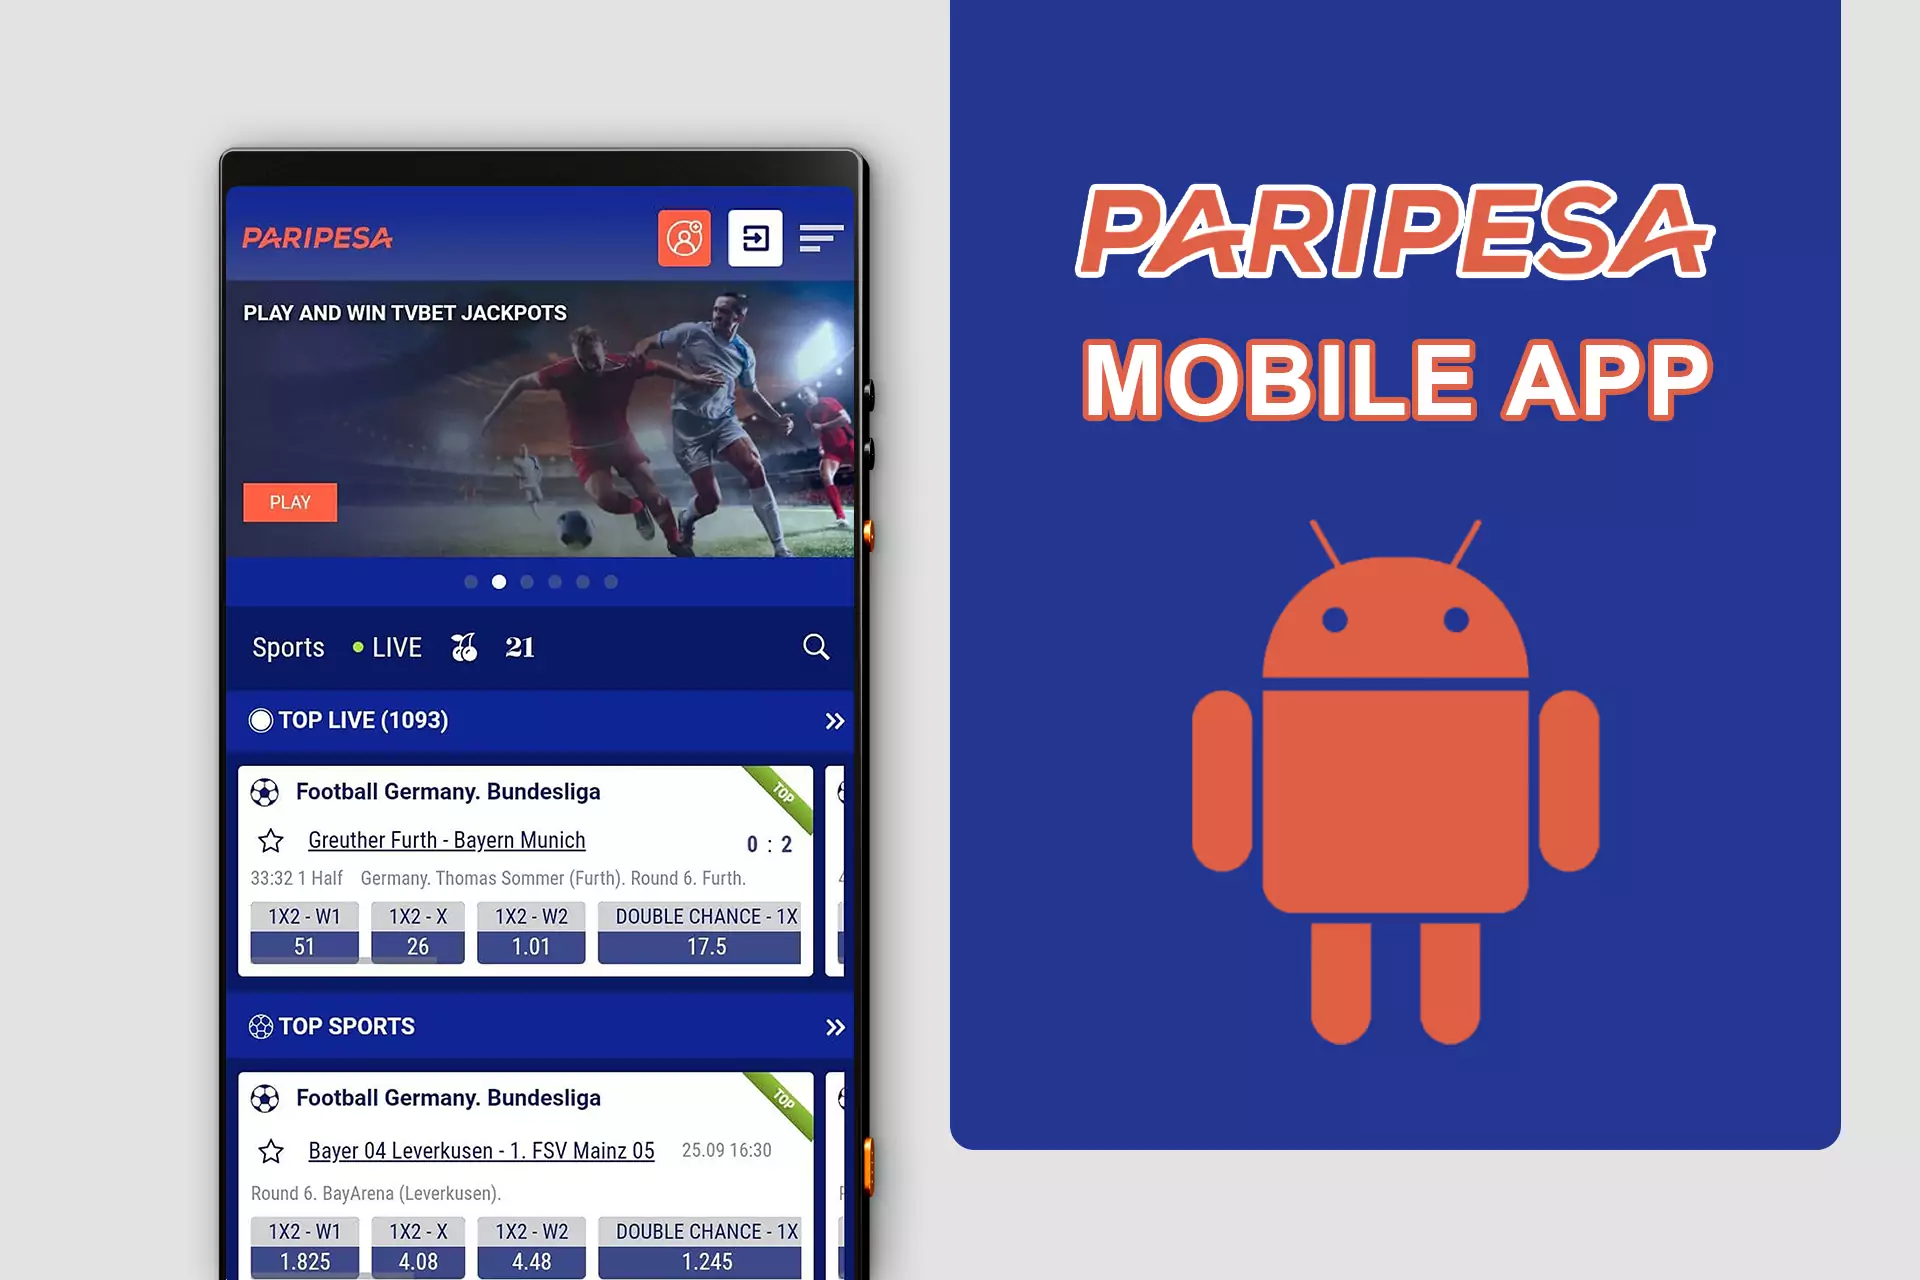 अपनी सुविधा के लिए, आप Paripesa का एंड्रॉइड ऐप डाउनलोड कर सकते हैं।